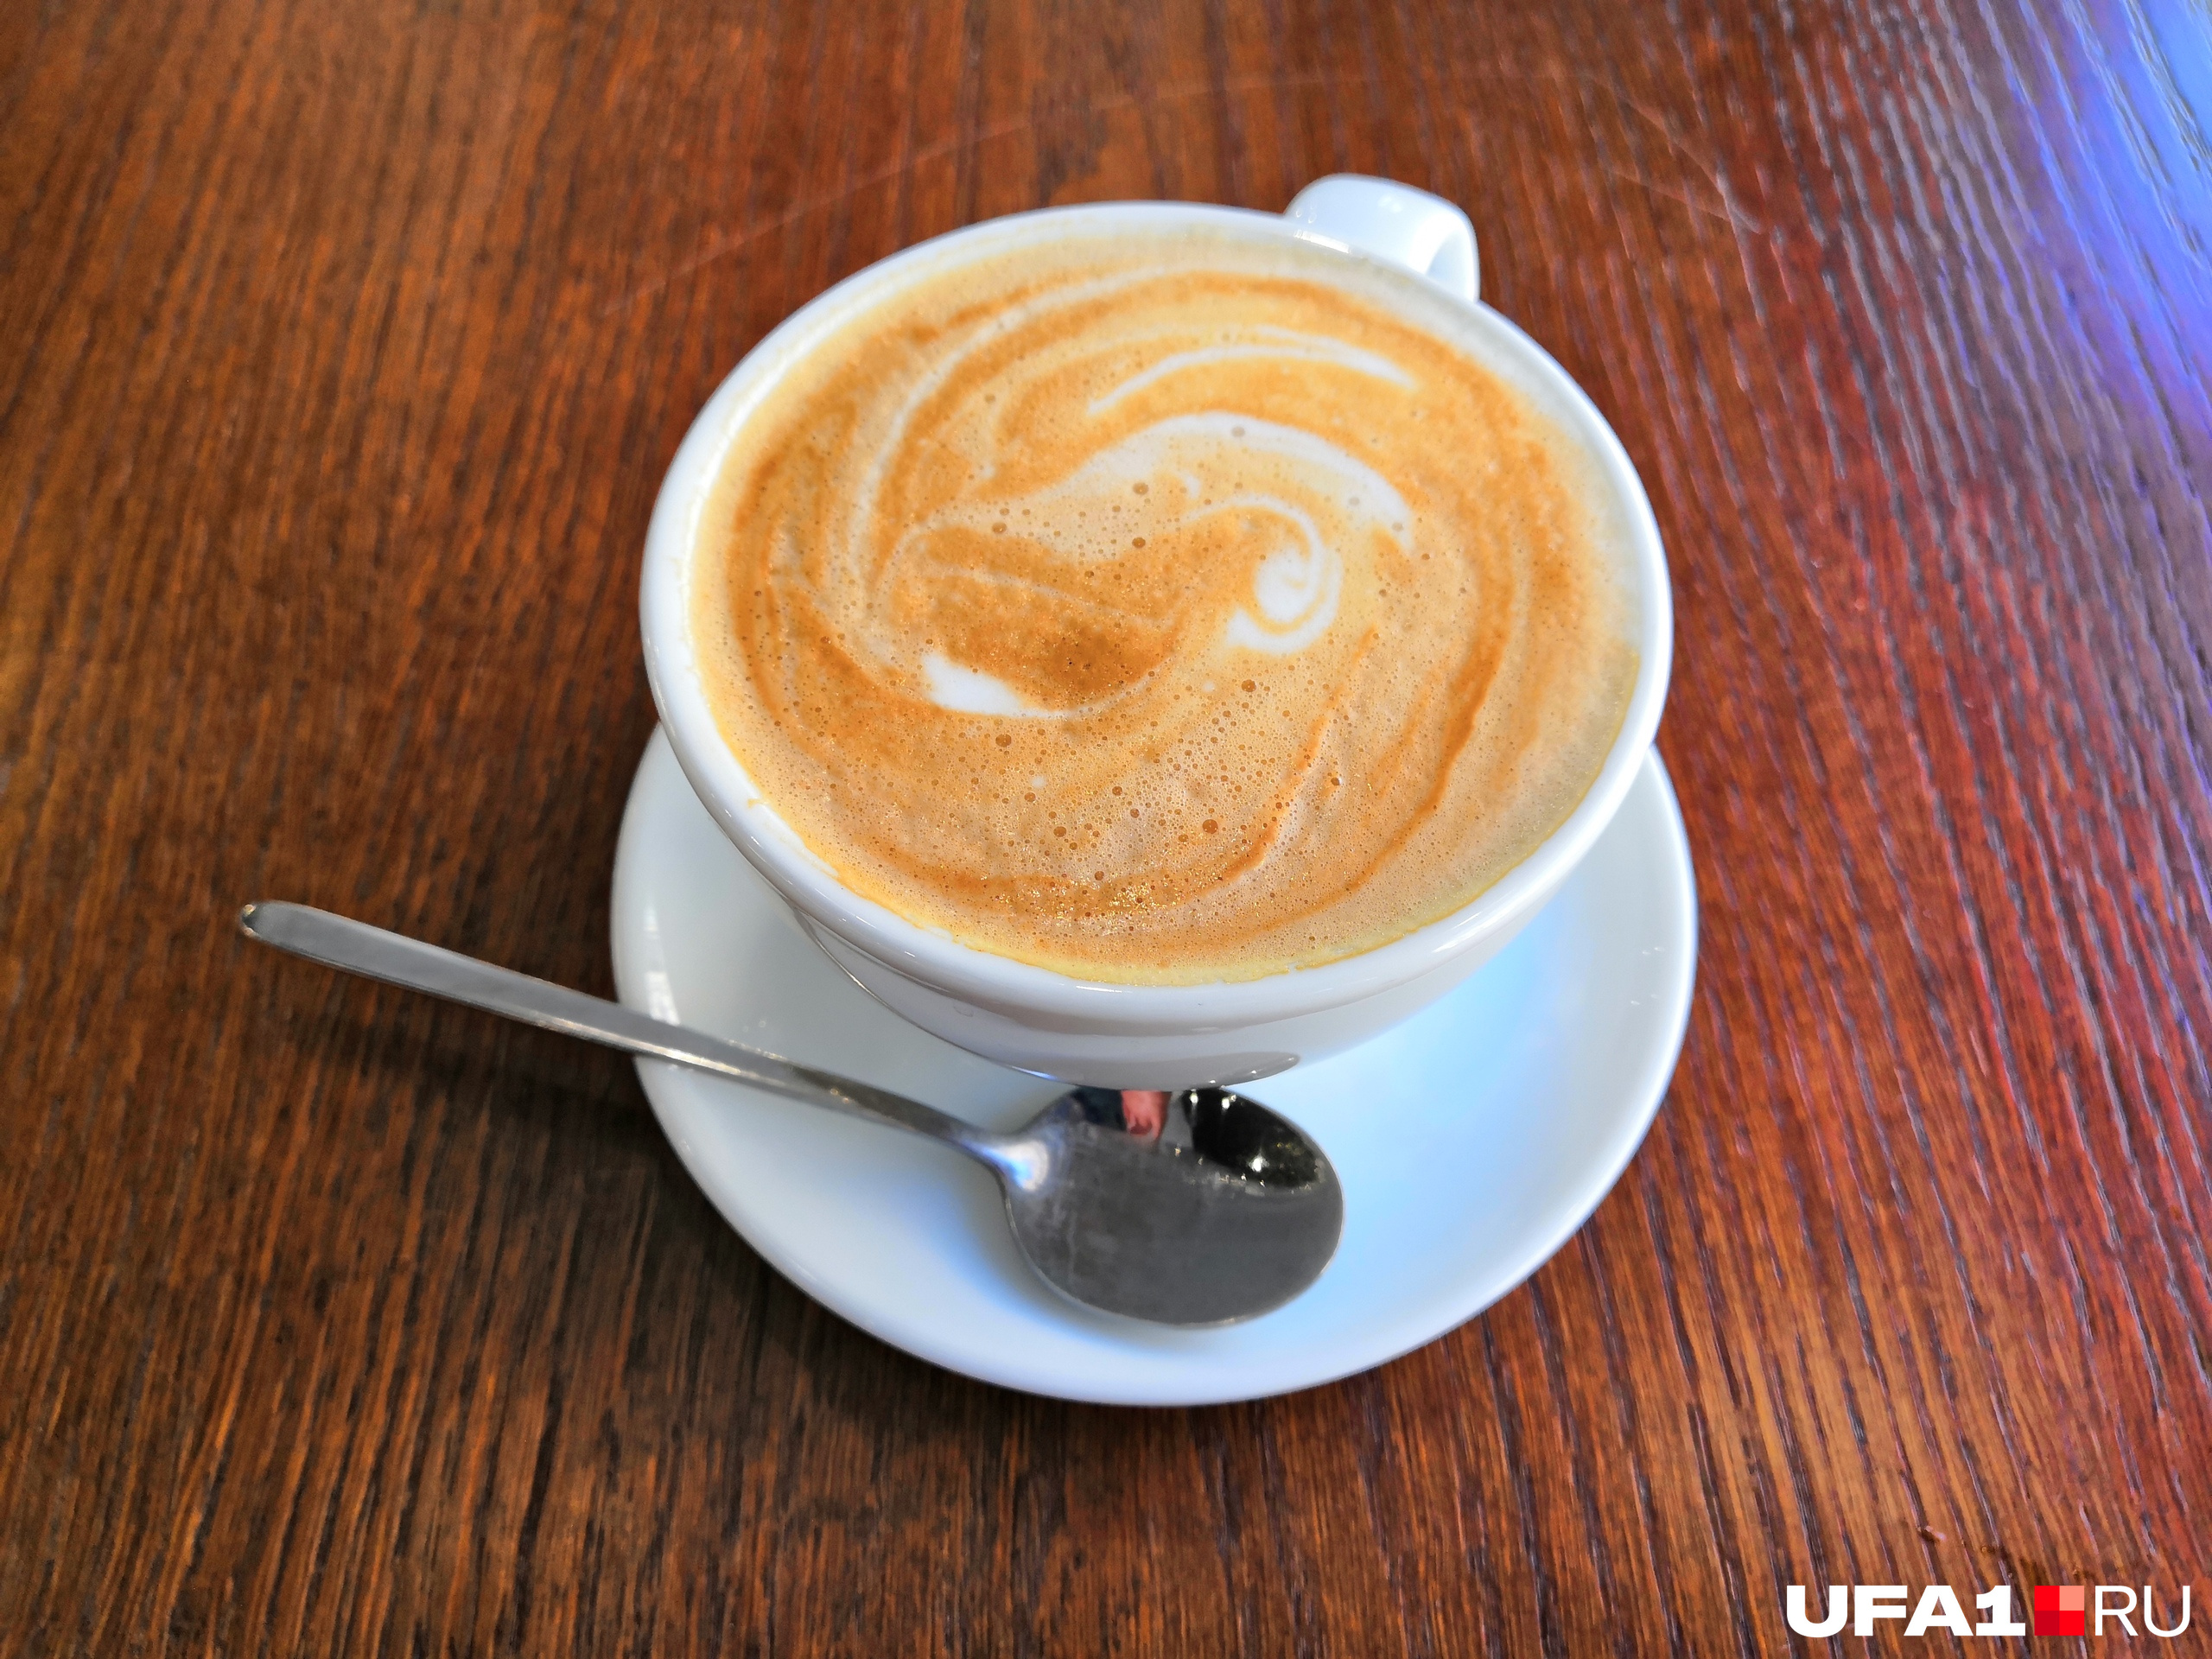 Стандартный кофе, точно такой же можно приобрести в любой кофейне города